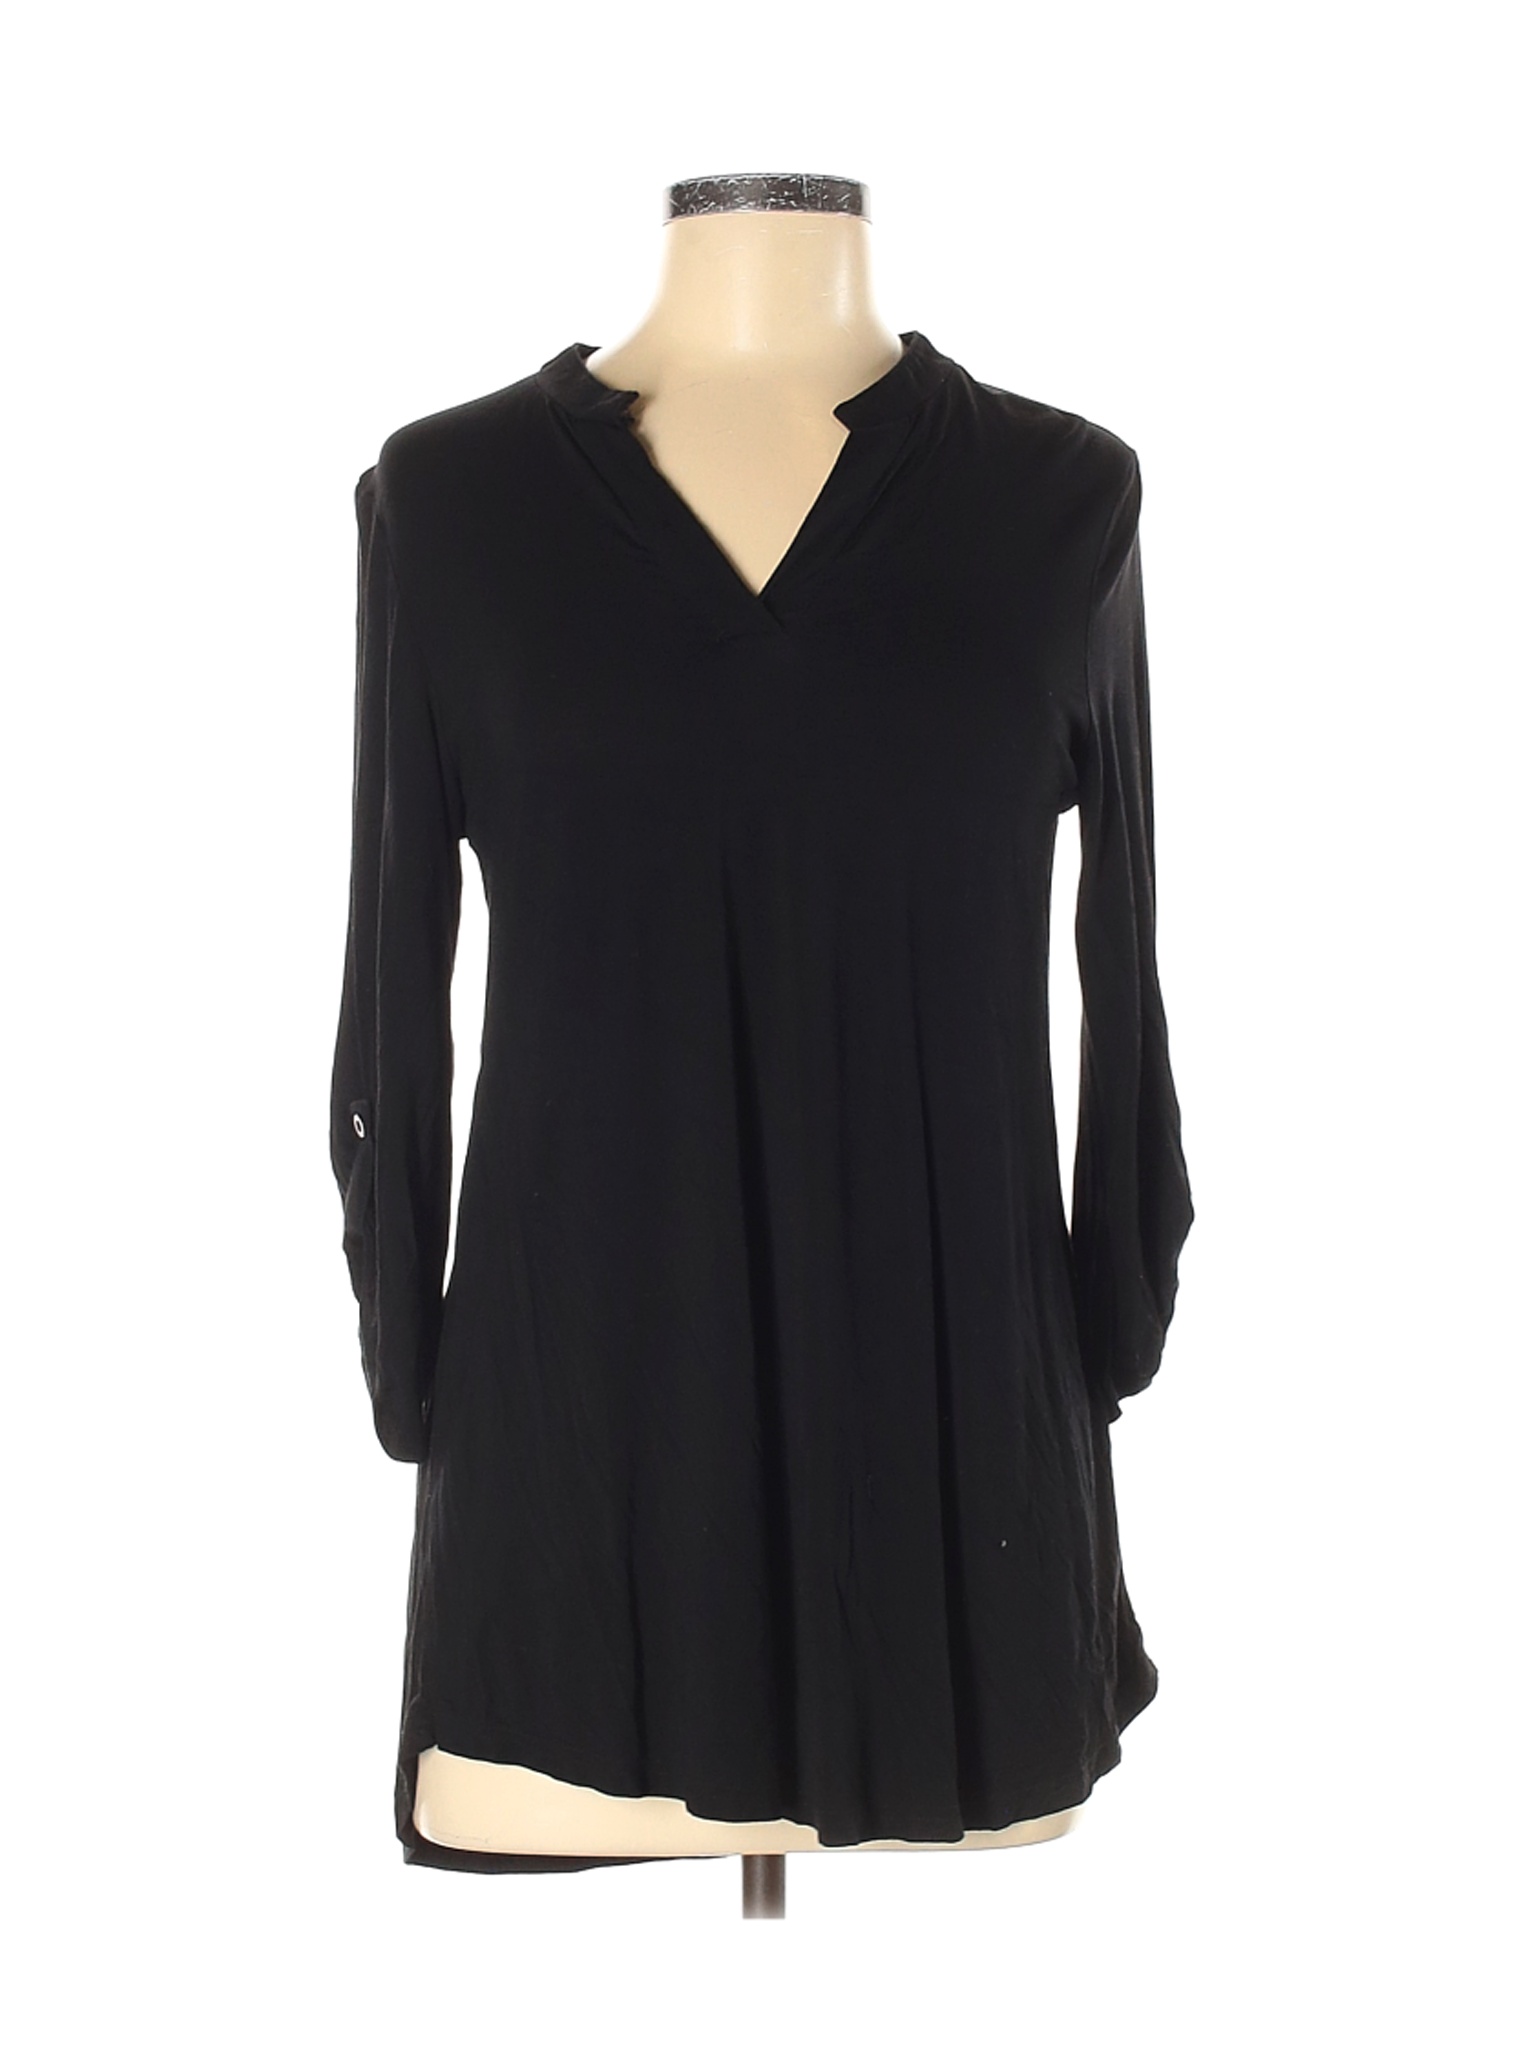 Zattcas Women Black 3/4 Sleeve Top M | eBay